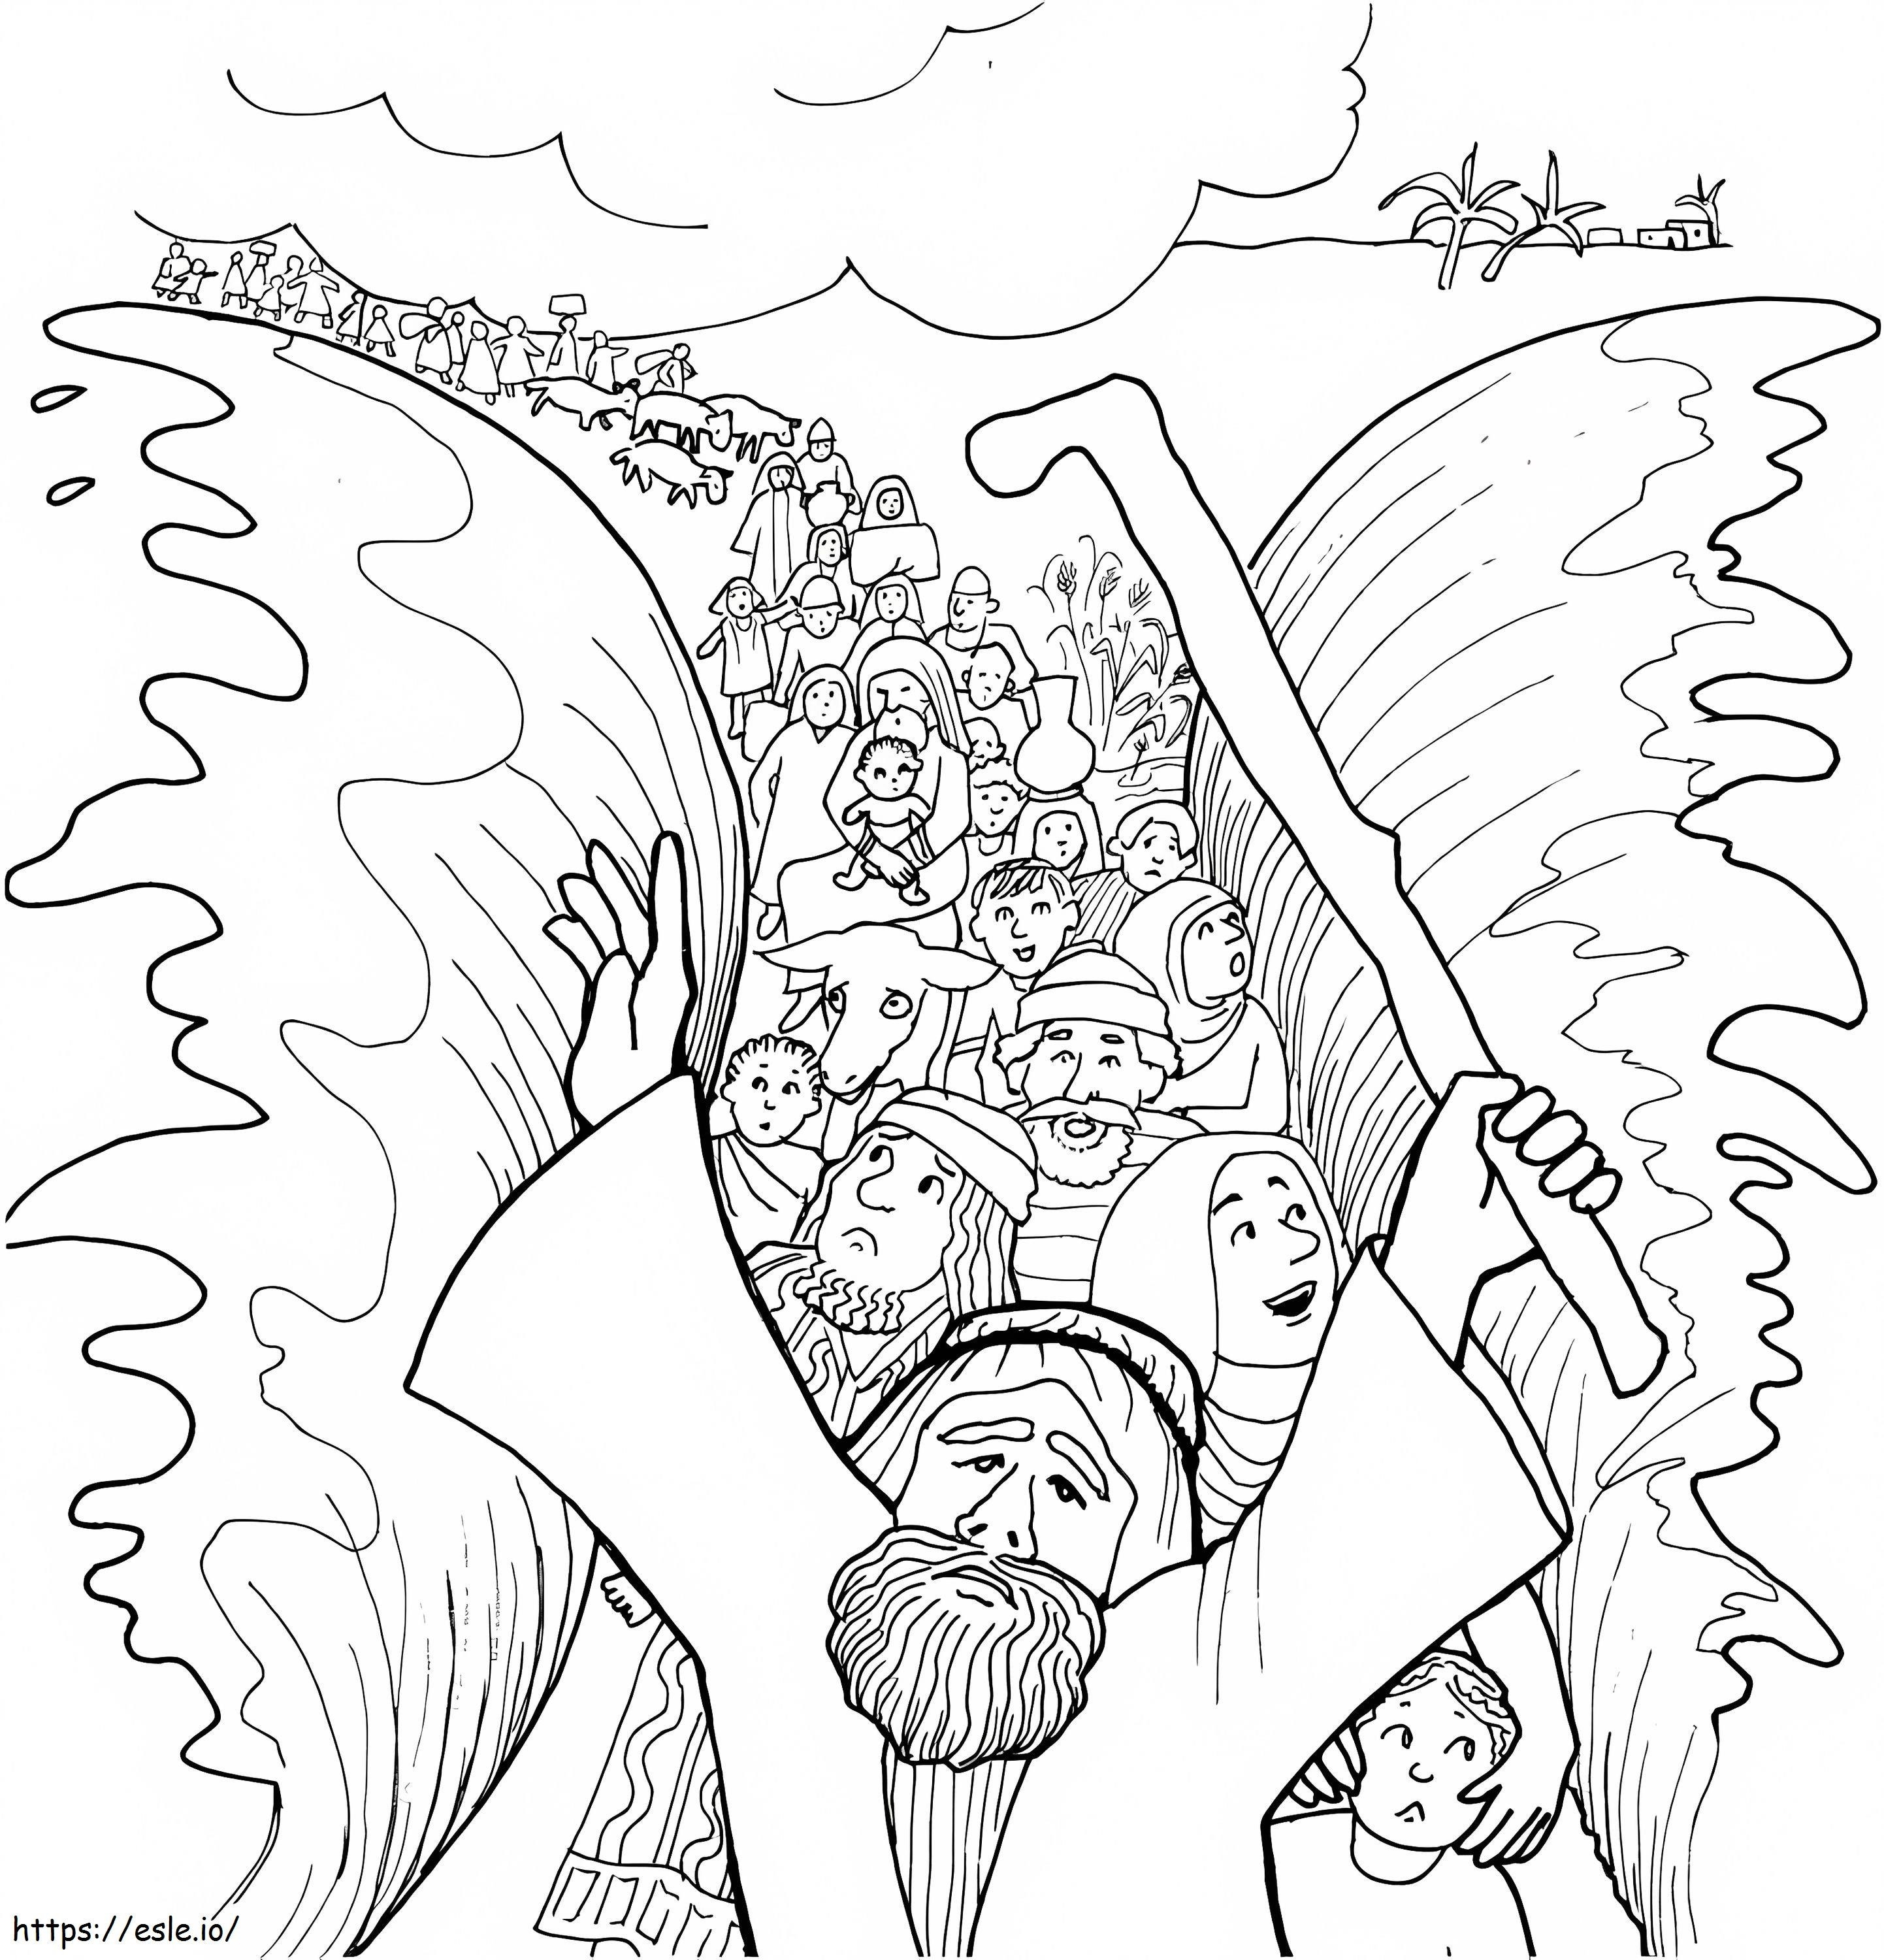 Mojżesz przekraczający Morze Czerwone kolorowanka